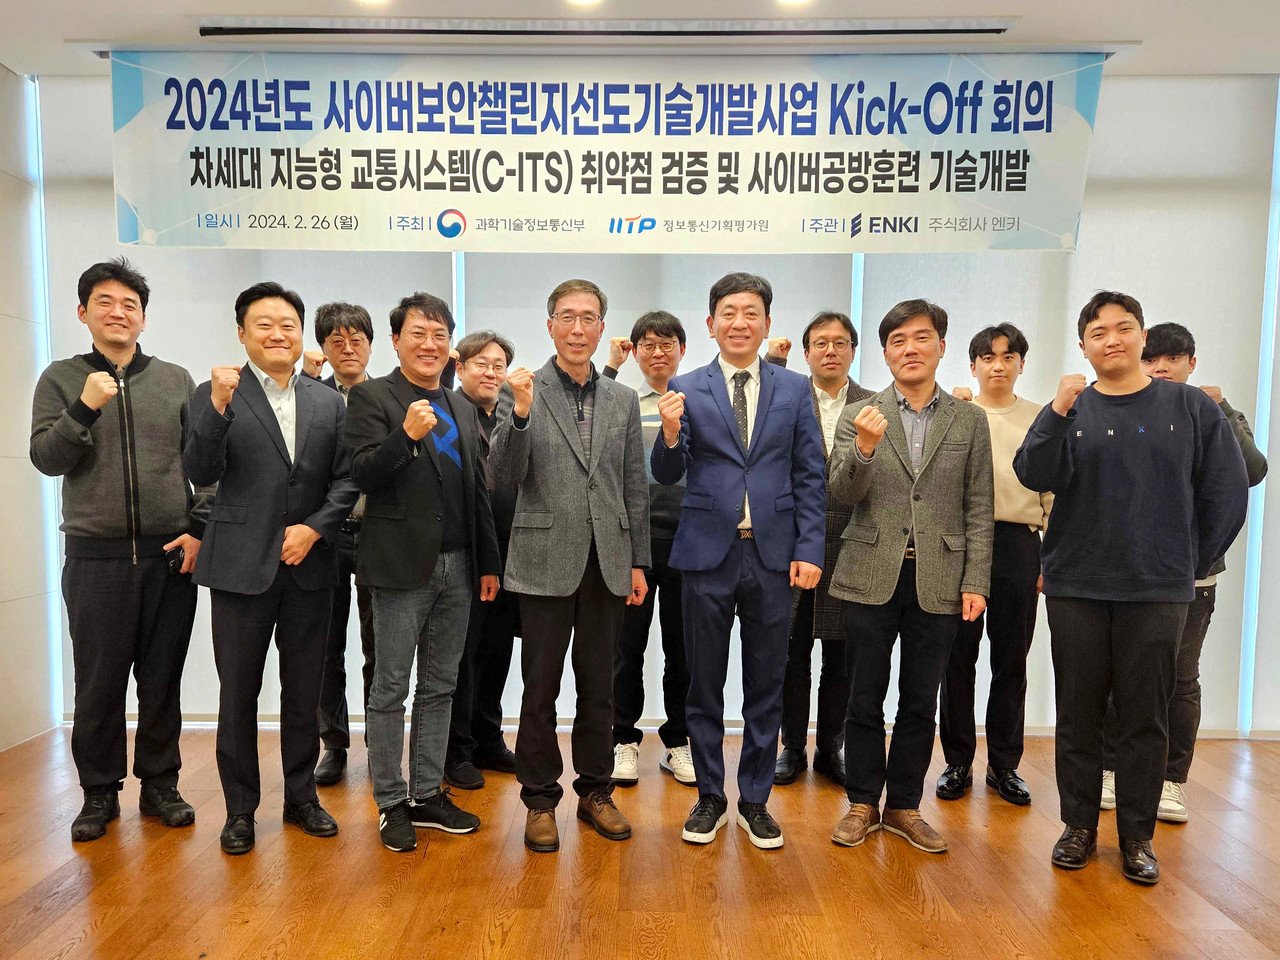 엔키가 사이버보안챌린지 선도기술개발사업 킥오프 회의를 개최했다.